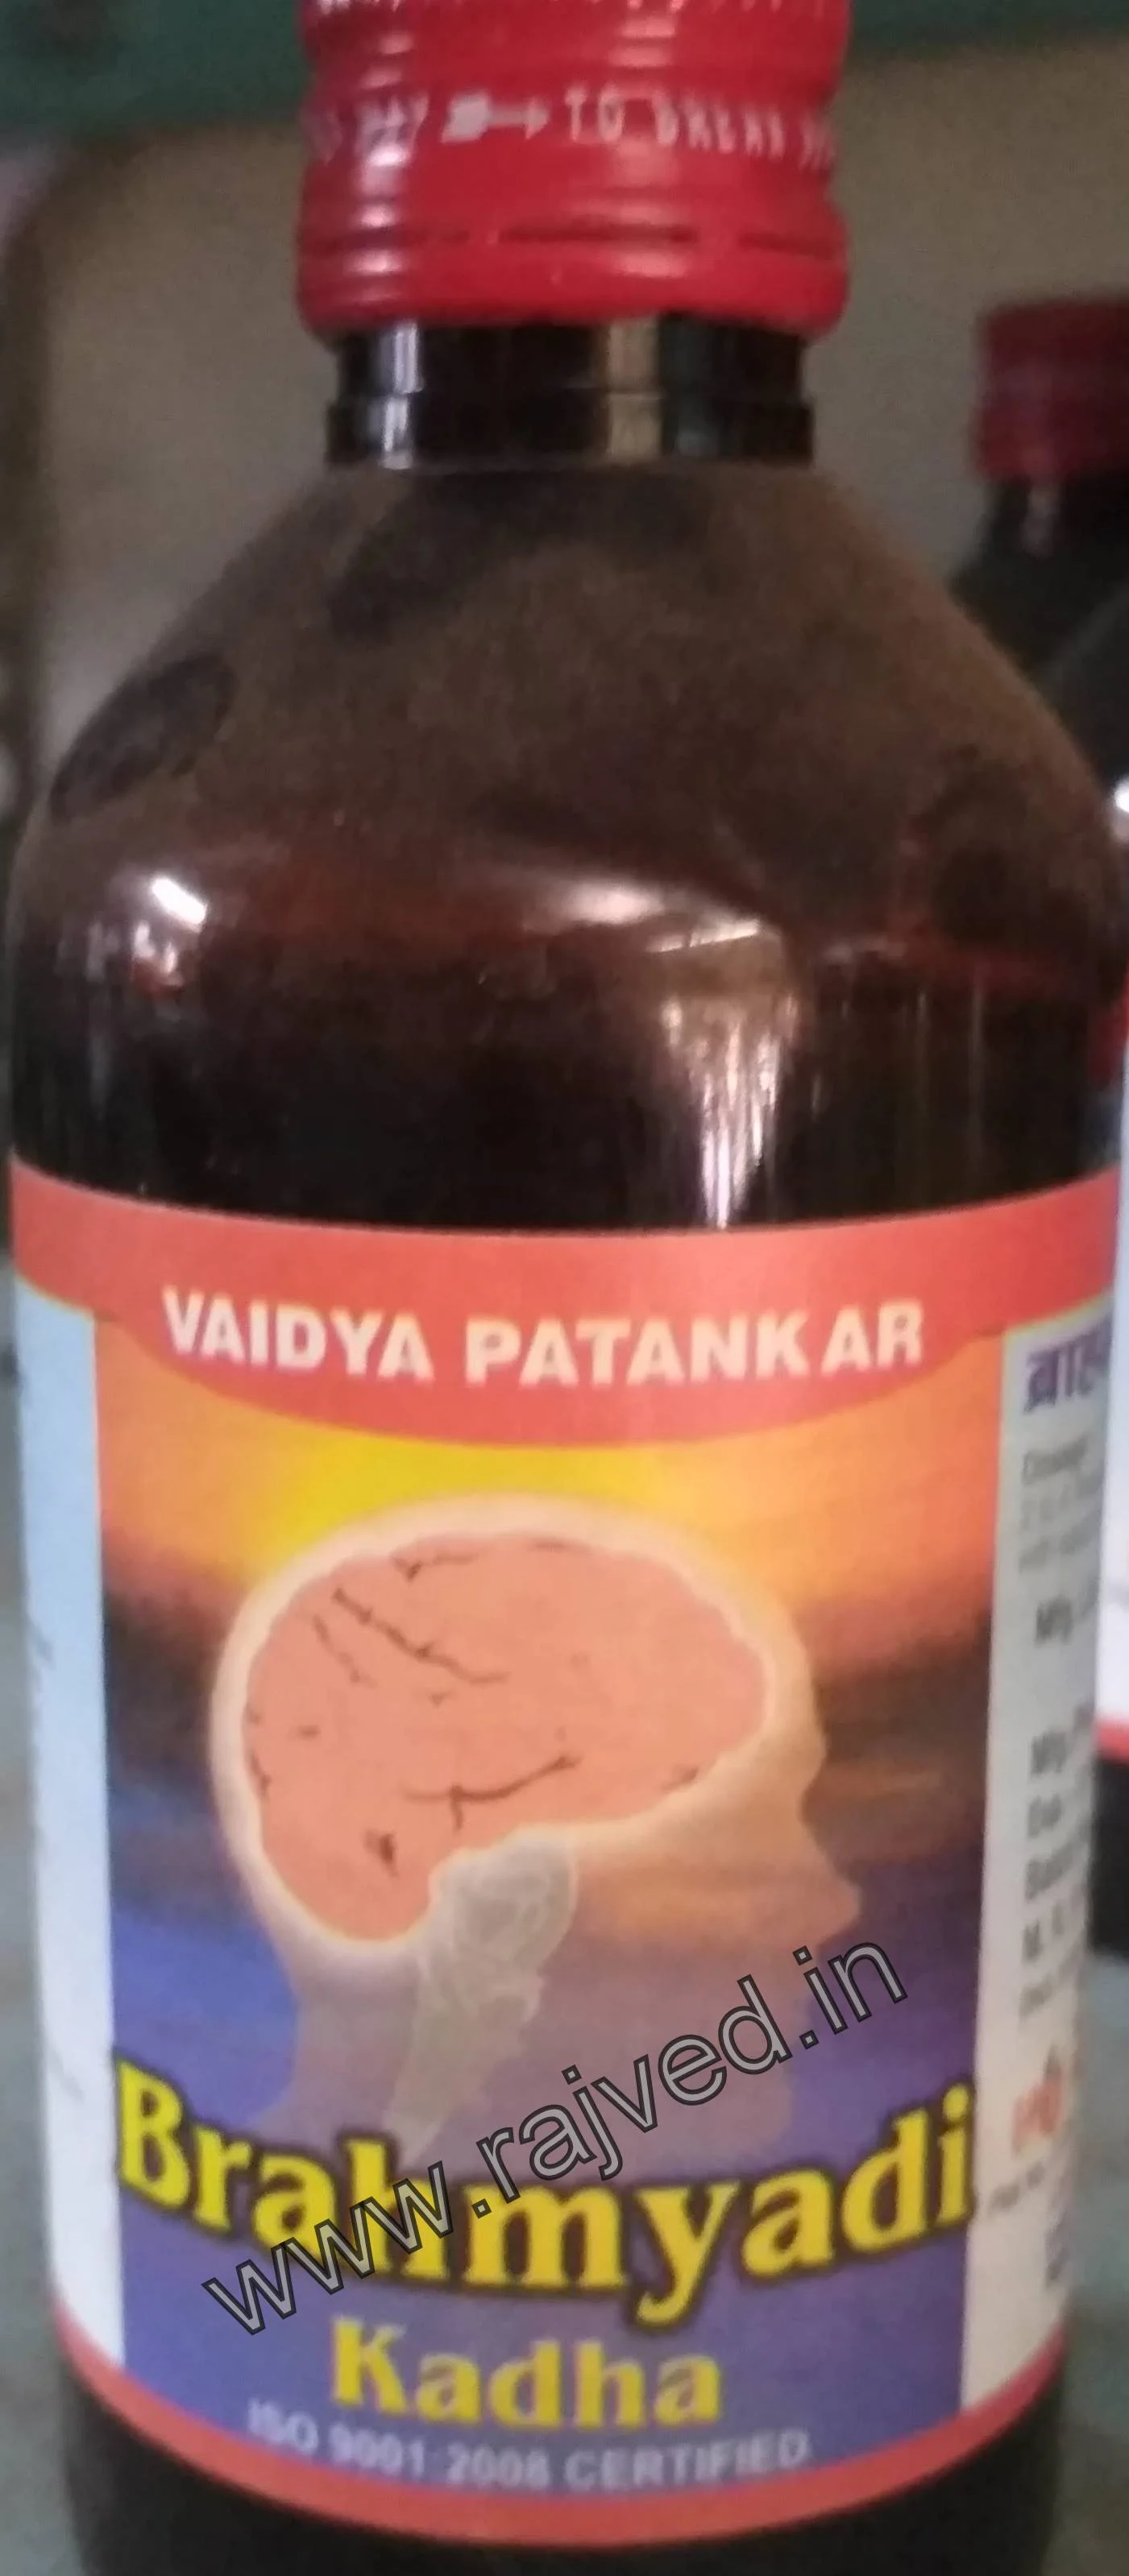 brahmyadi kadha 200 ml Vaidya Patankar Pharmacy